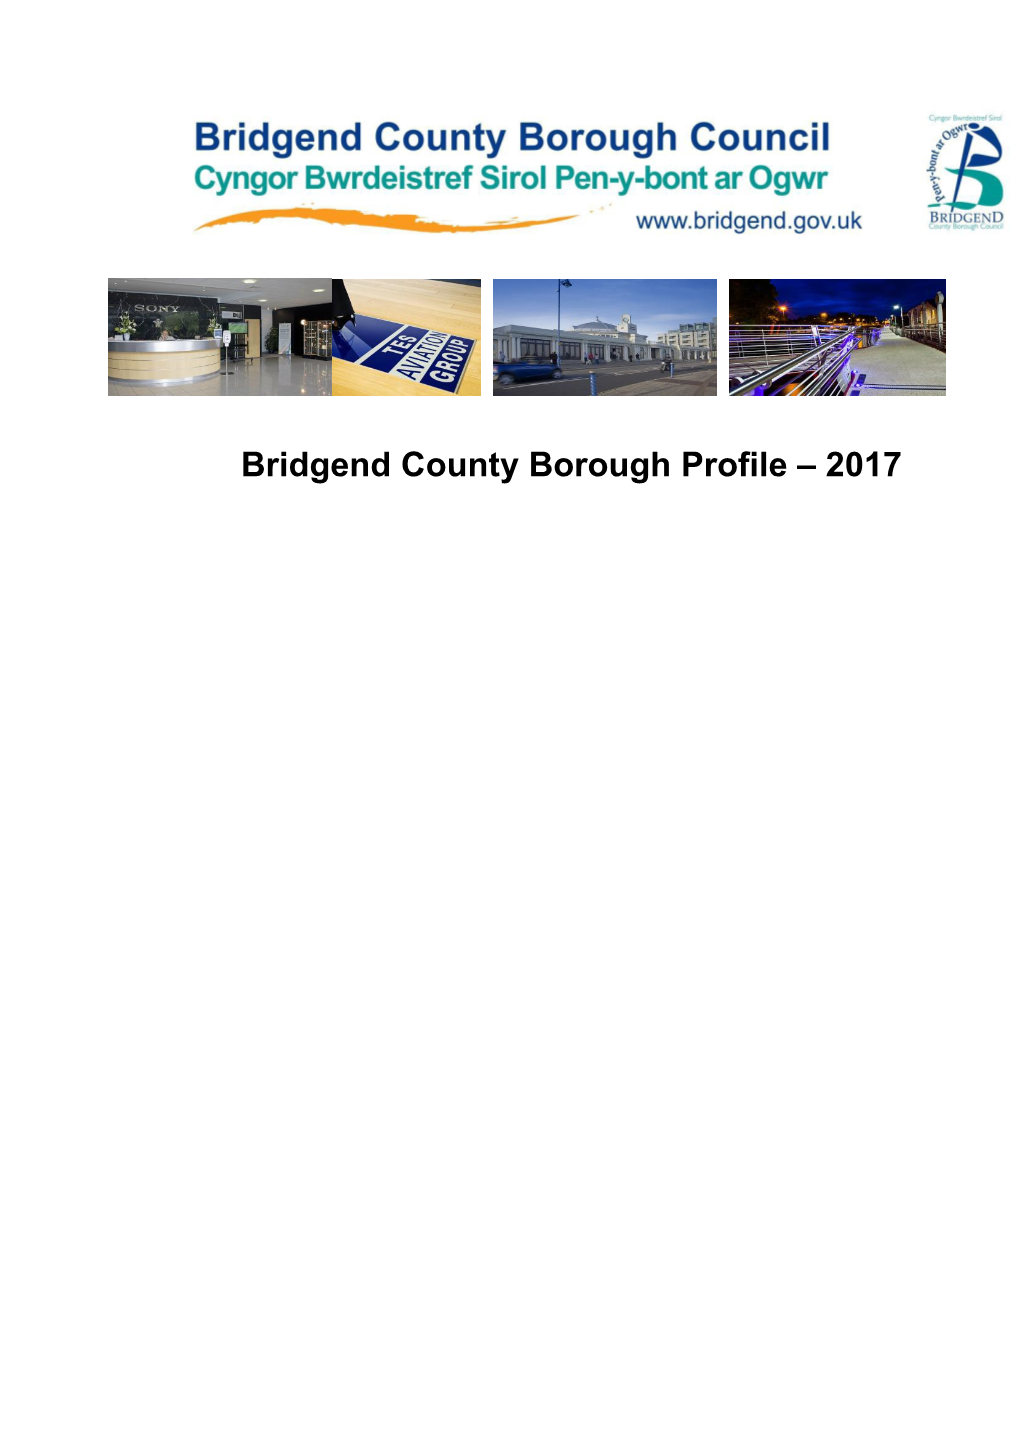 Bridgend County Borough Profile 2017